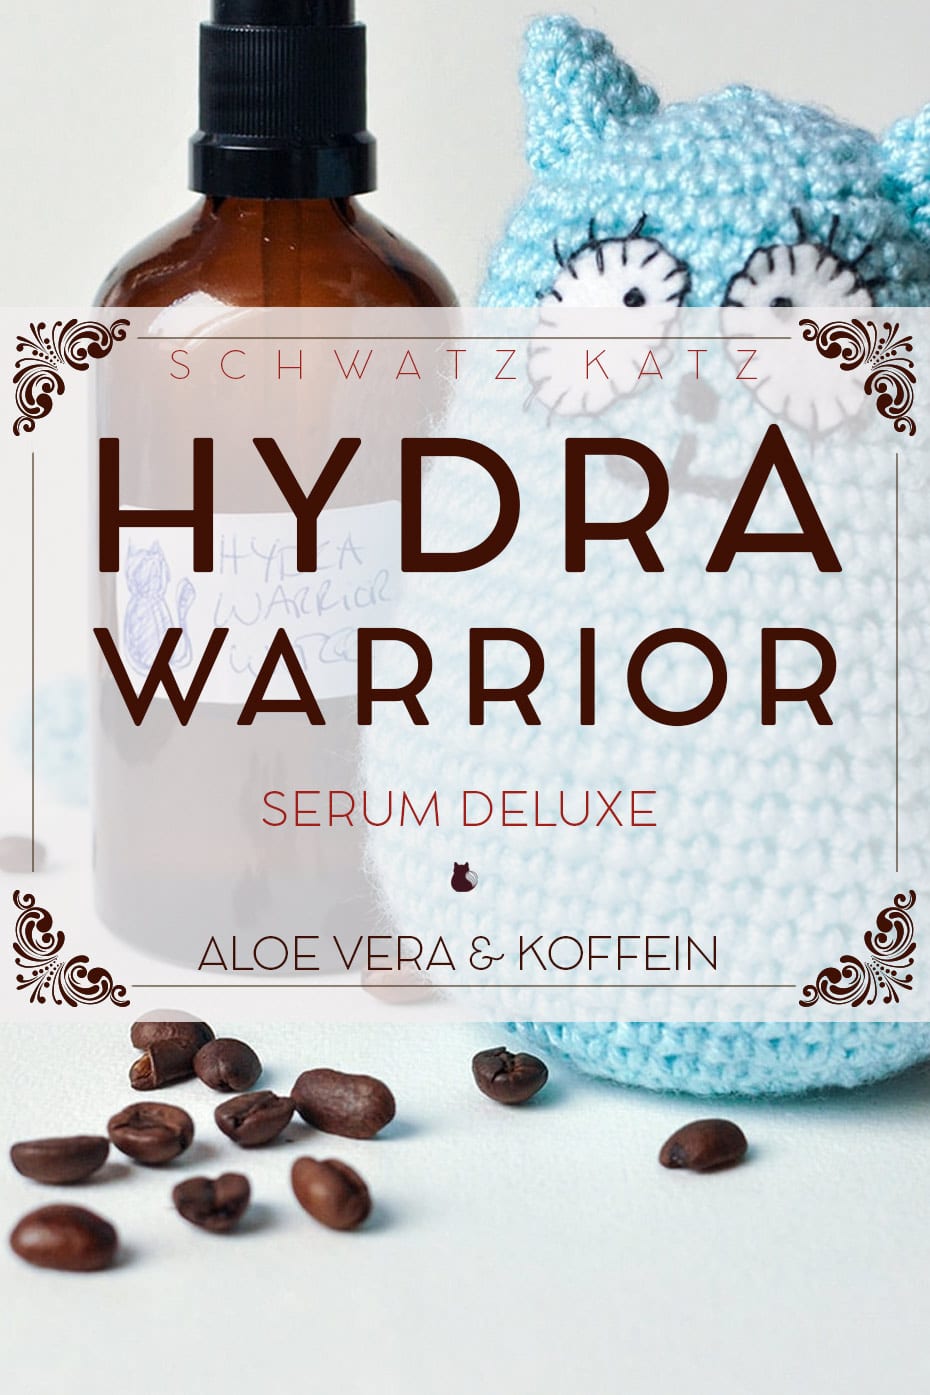 »Hydra Warrior« Feuchtigkeitsserum deluxe | Schwatz Katz